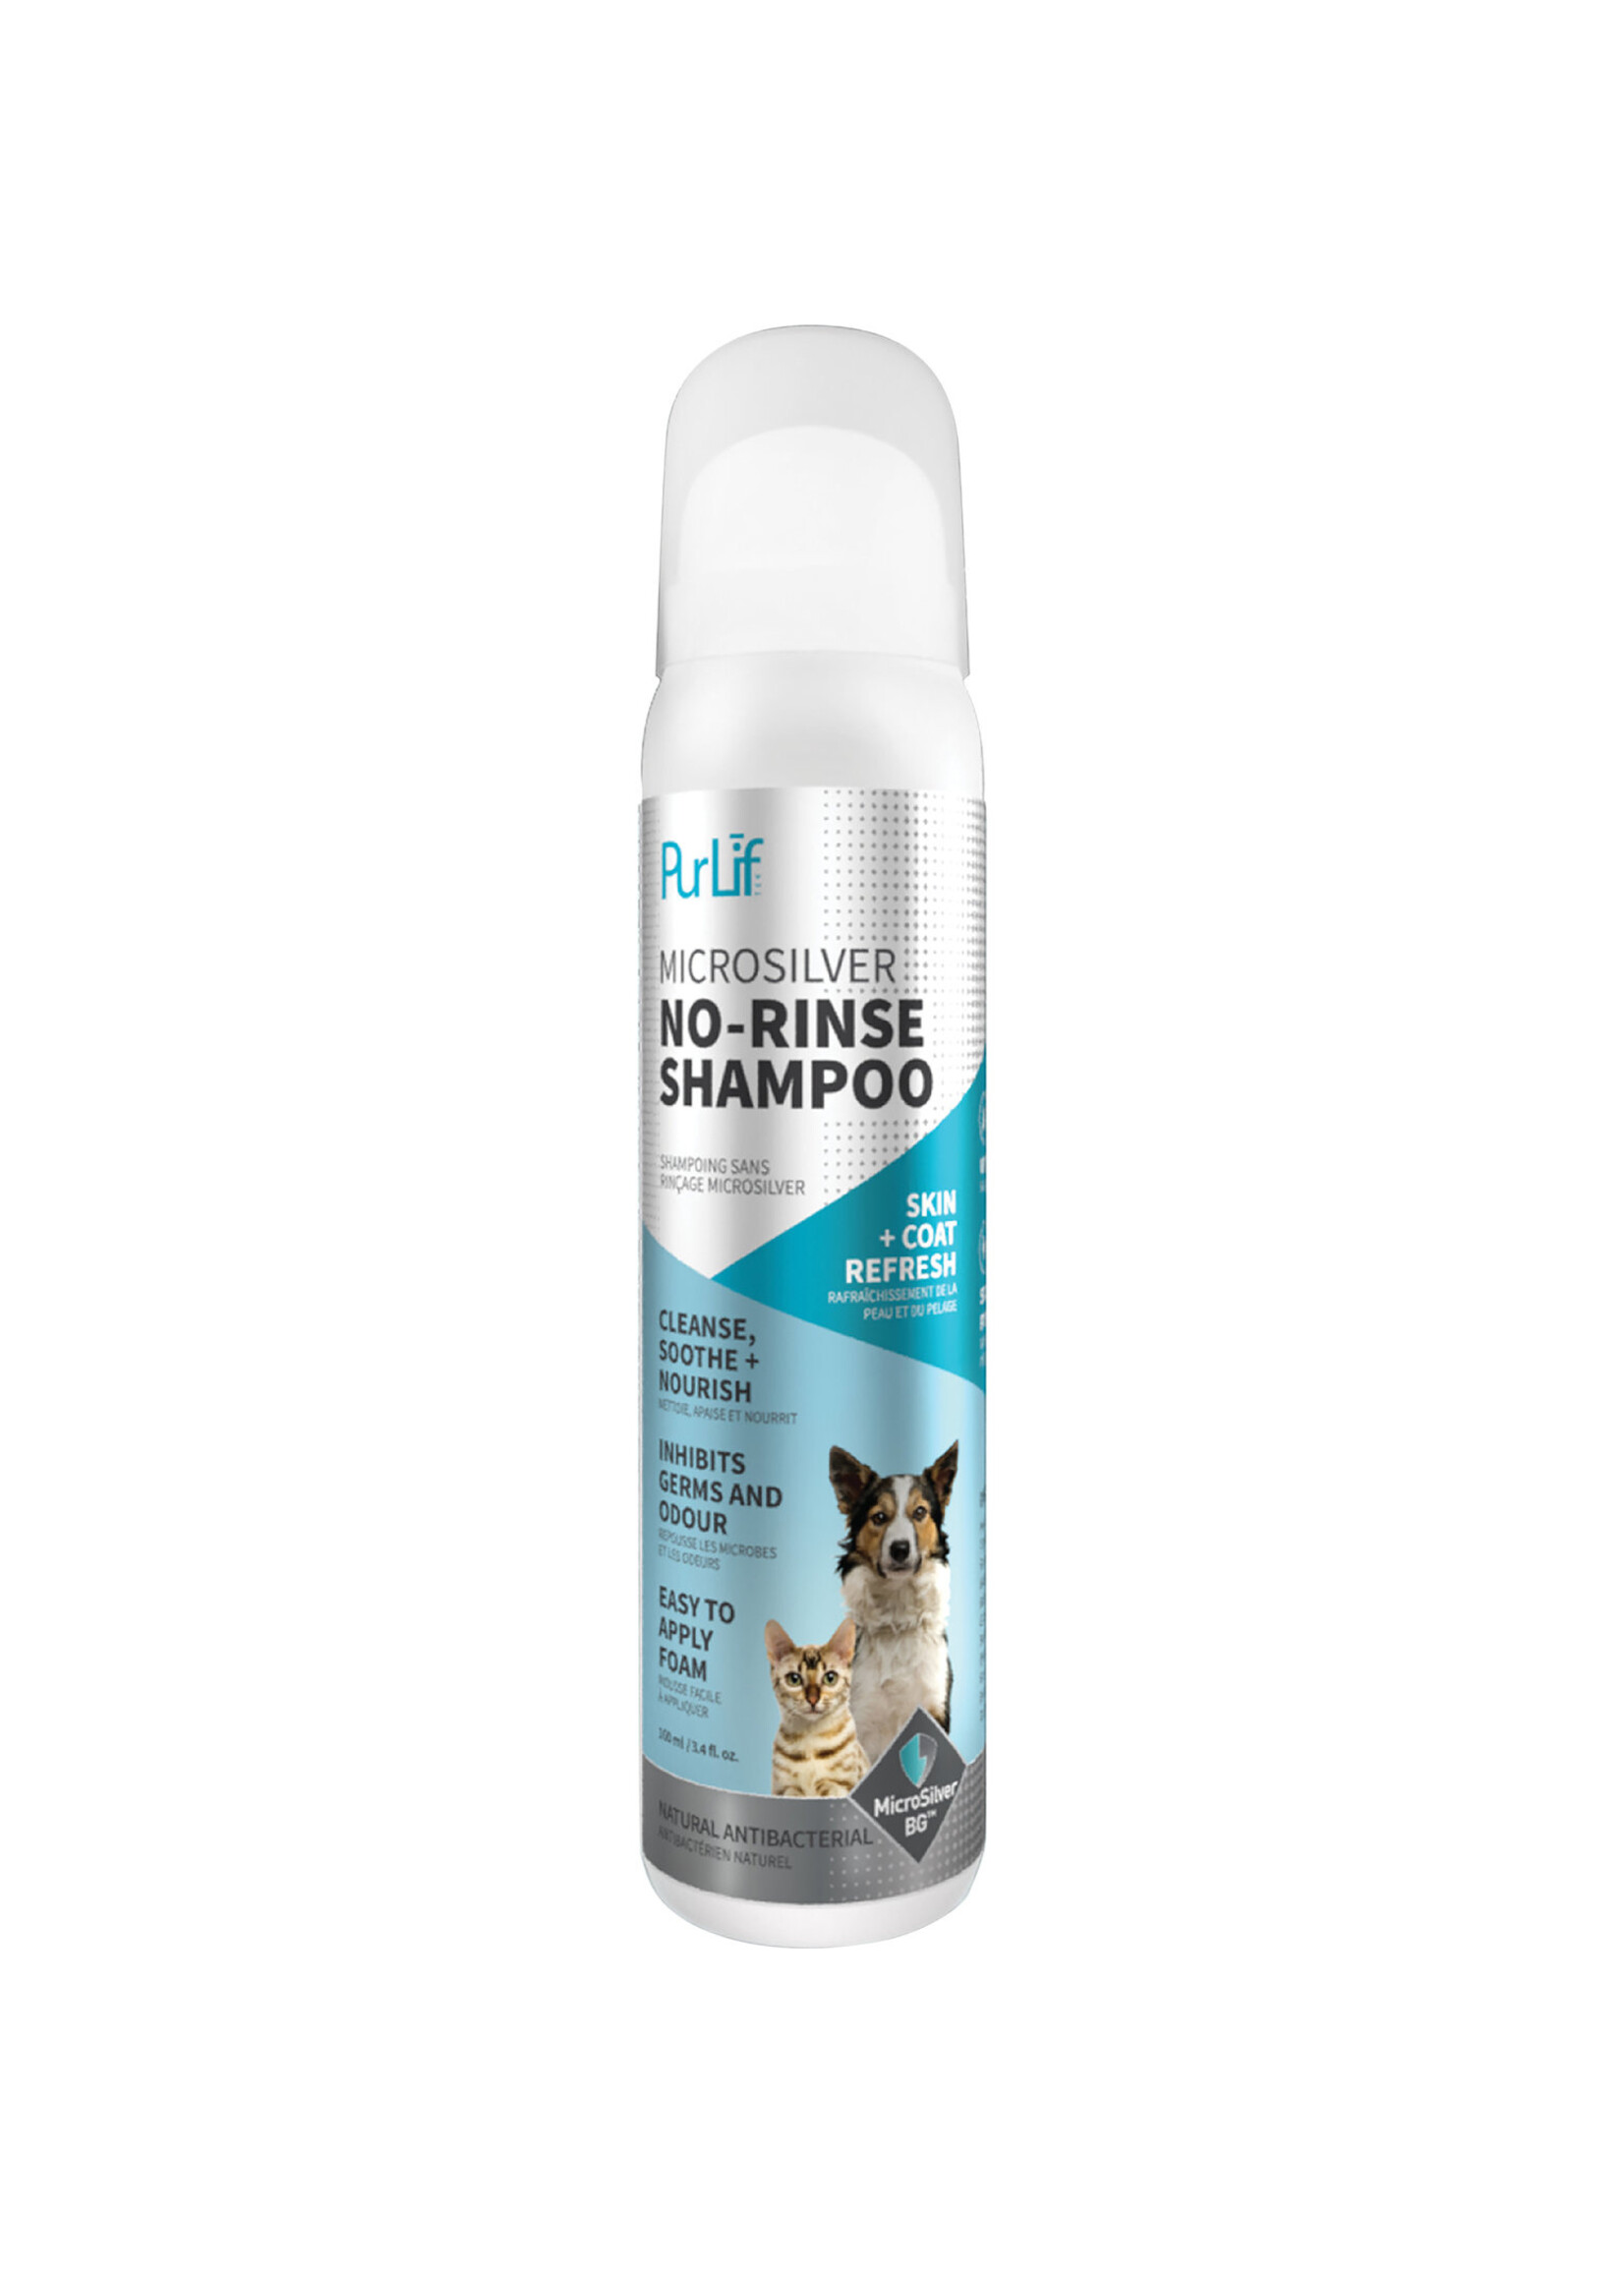 PurLif No-Rinse Shampoo 100 ml